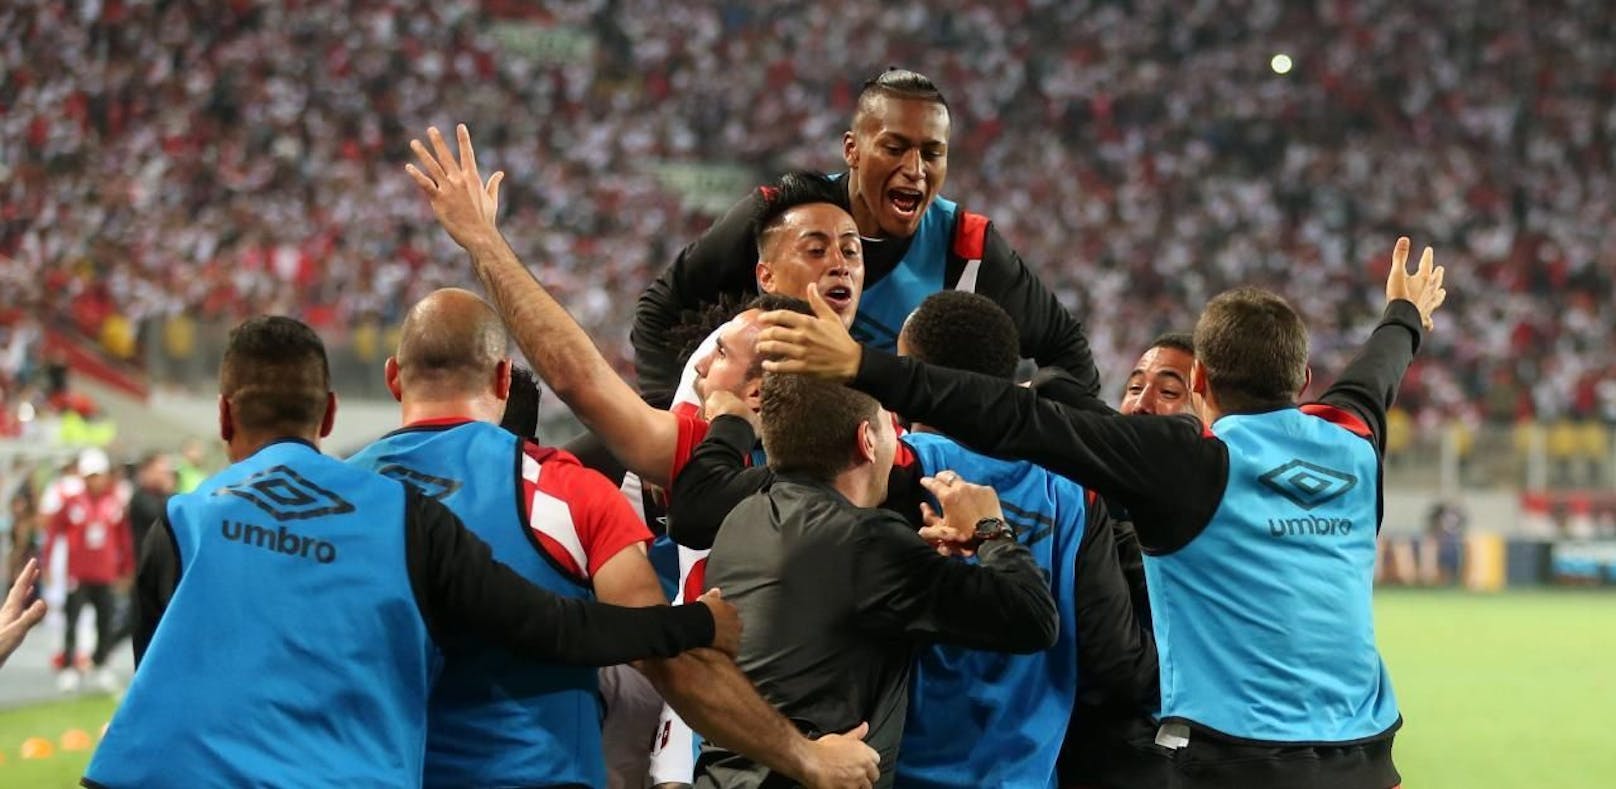 Peru löst Ticket! Jetzt stehen alle WM-Teams fest